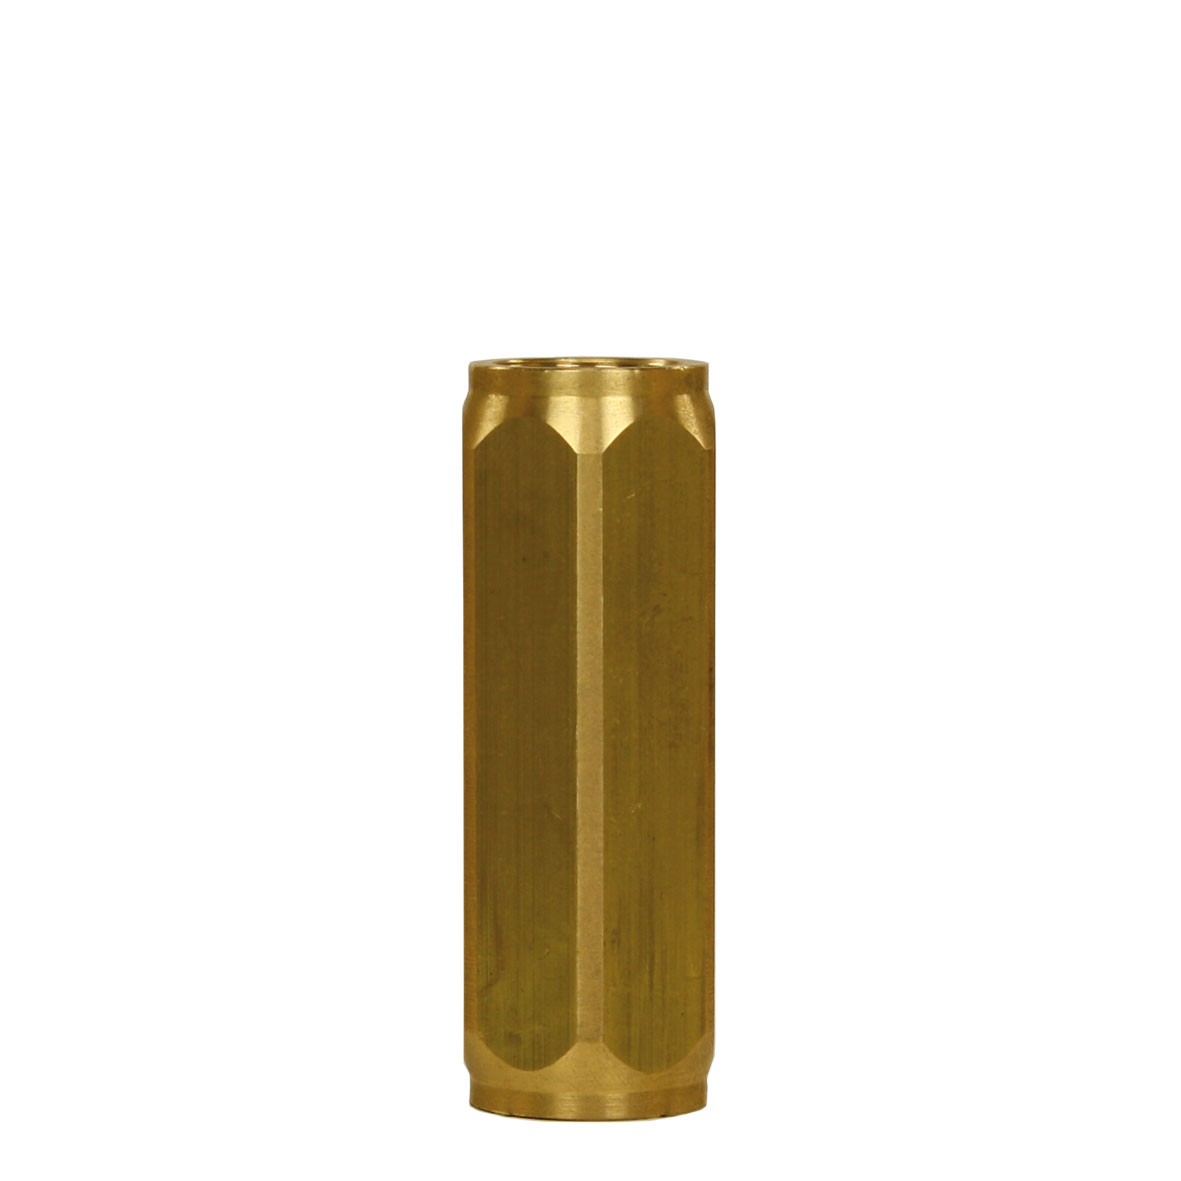 Clapets anti-retour, ST-264 - 3/8" F. Laiton. 65 mm. Pression d'ouverture 0,05 - 0,1 bar. Max. 150 bar / 90 °C